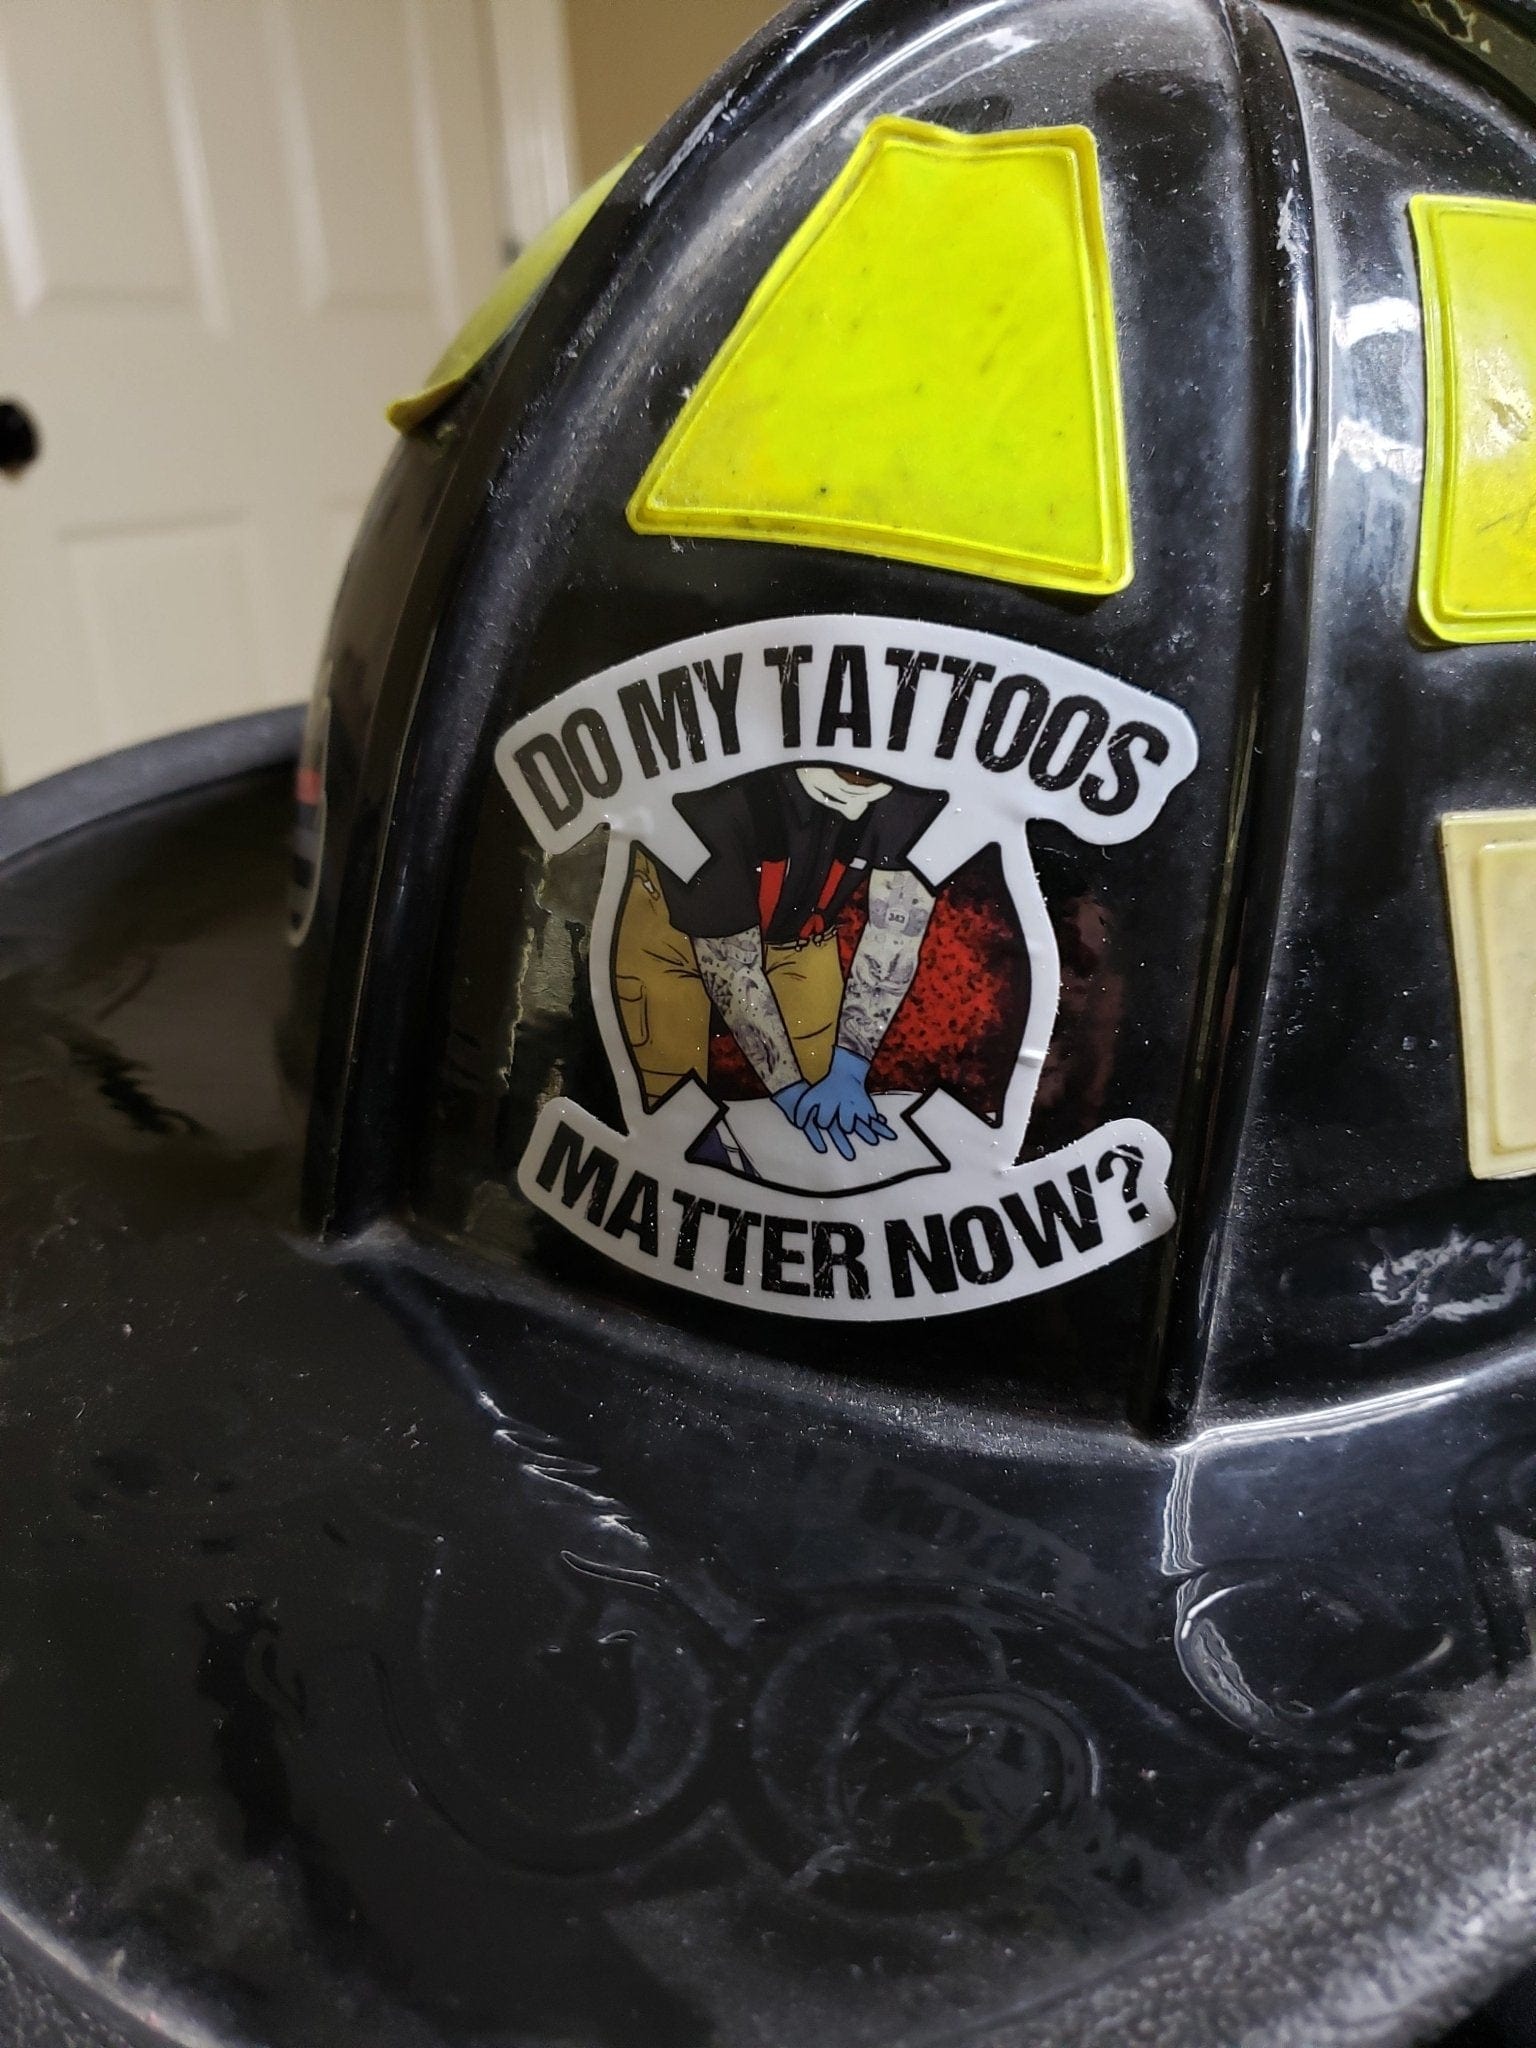 Chief Miller Do My Tattoos Matter Now -Helmet Apparel